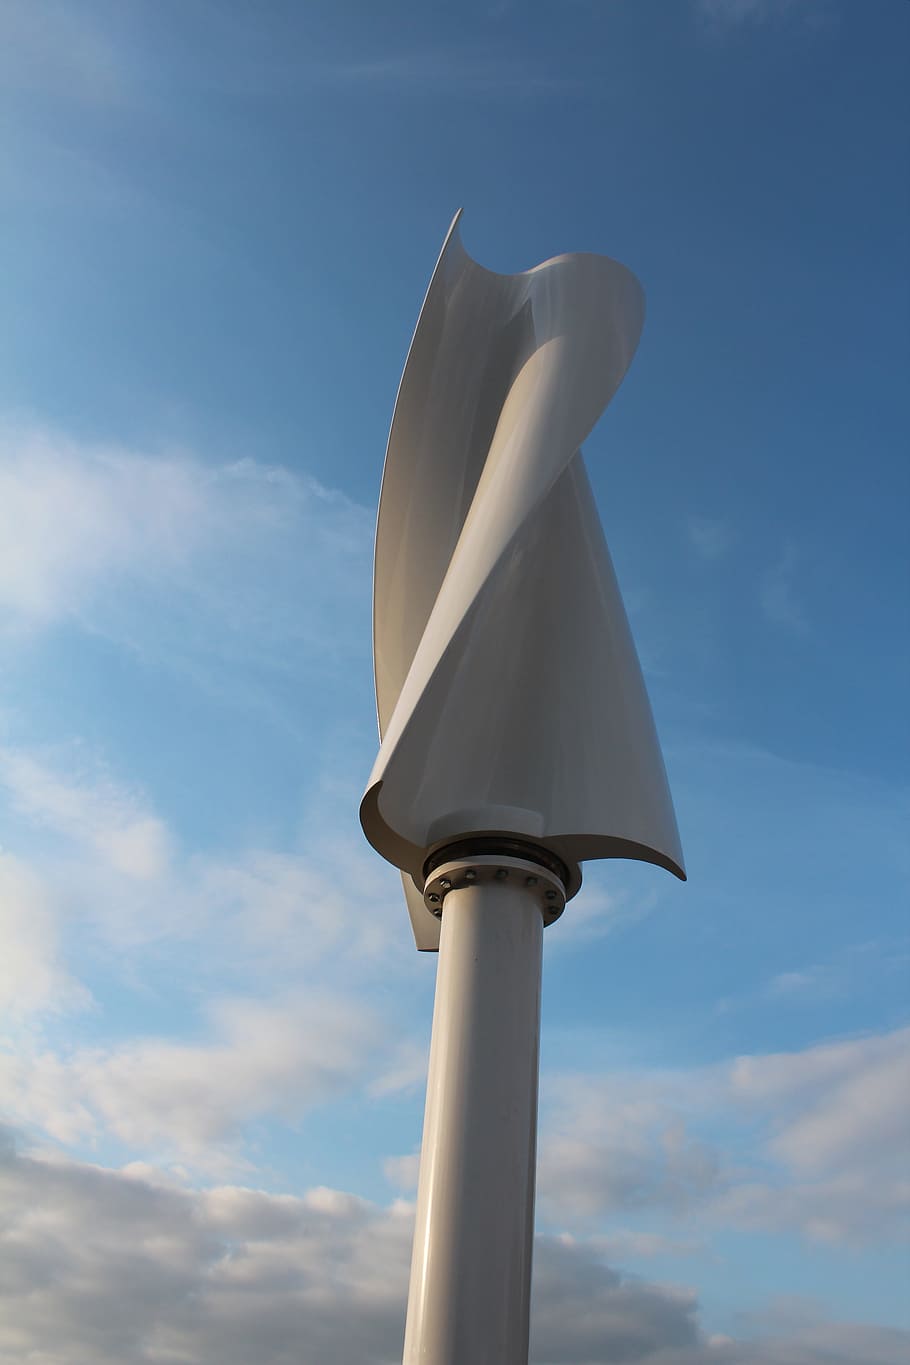 사 보니 우스 로터, 수직 풍력 터빈, 광고 풍력 시스템, 하늘, 구름-하늘, 낮은 각도보기, 아니 사람, 일, 자연, 건축 된 구조